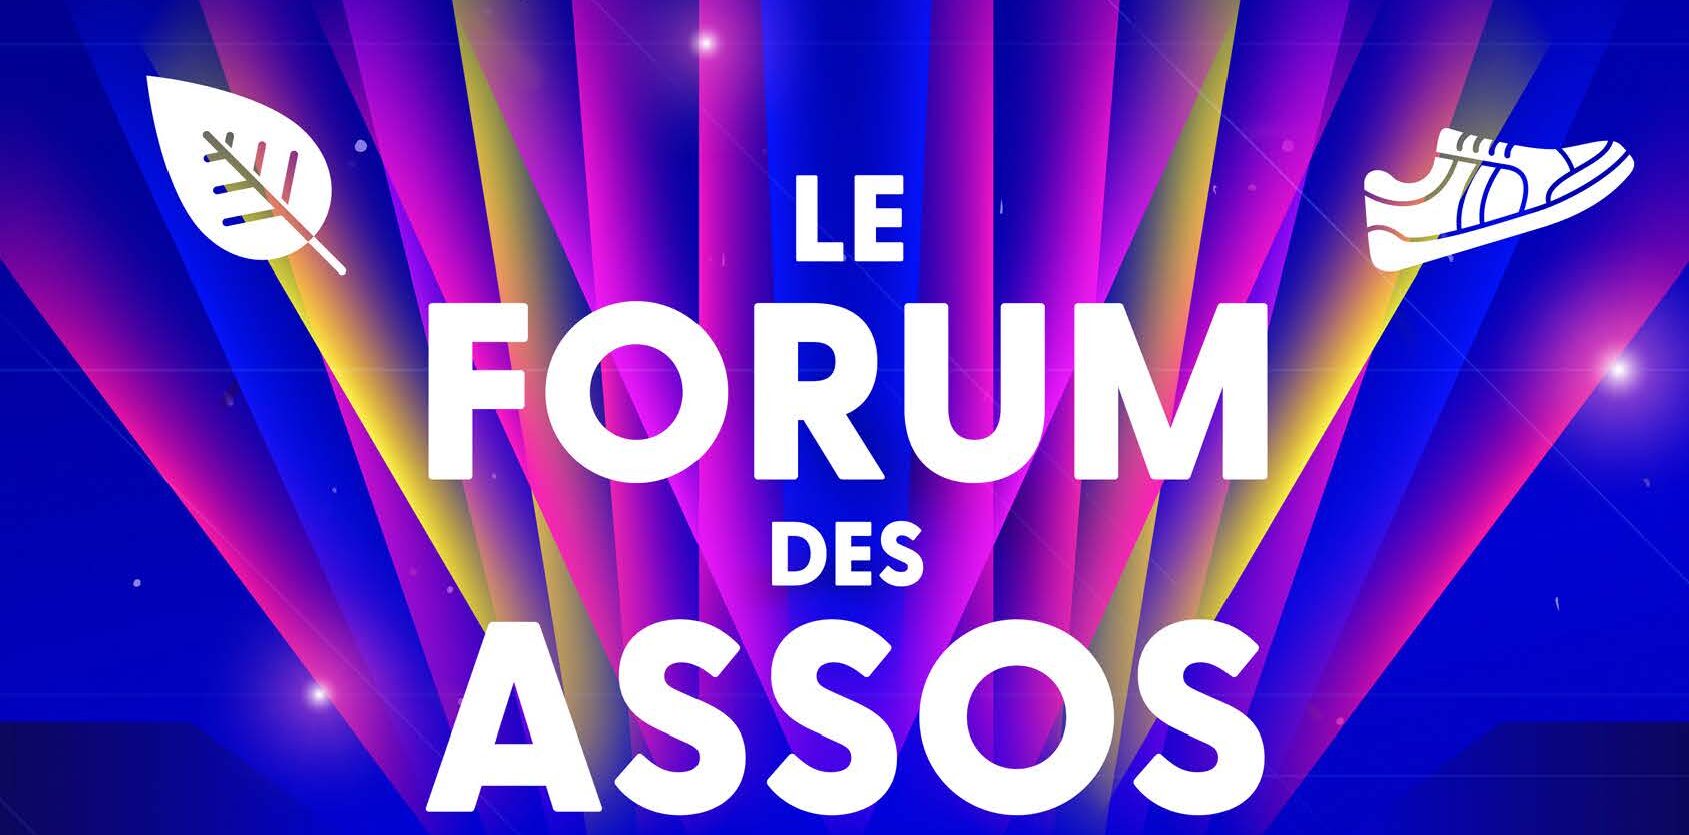 Le Forum des associations fait son show - Reims (51)